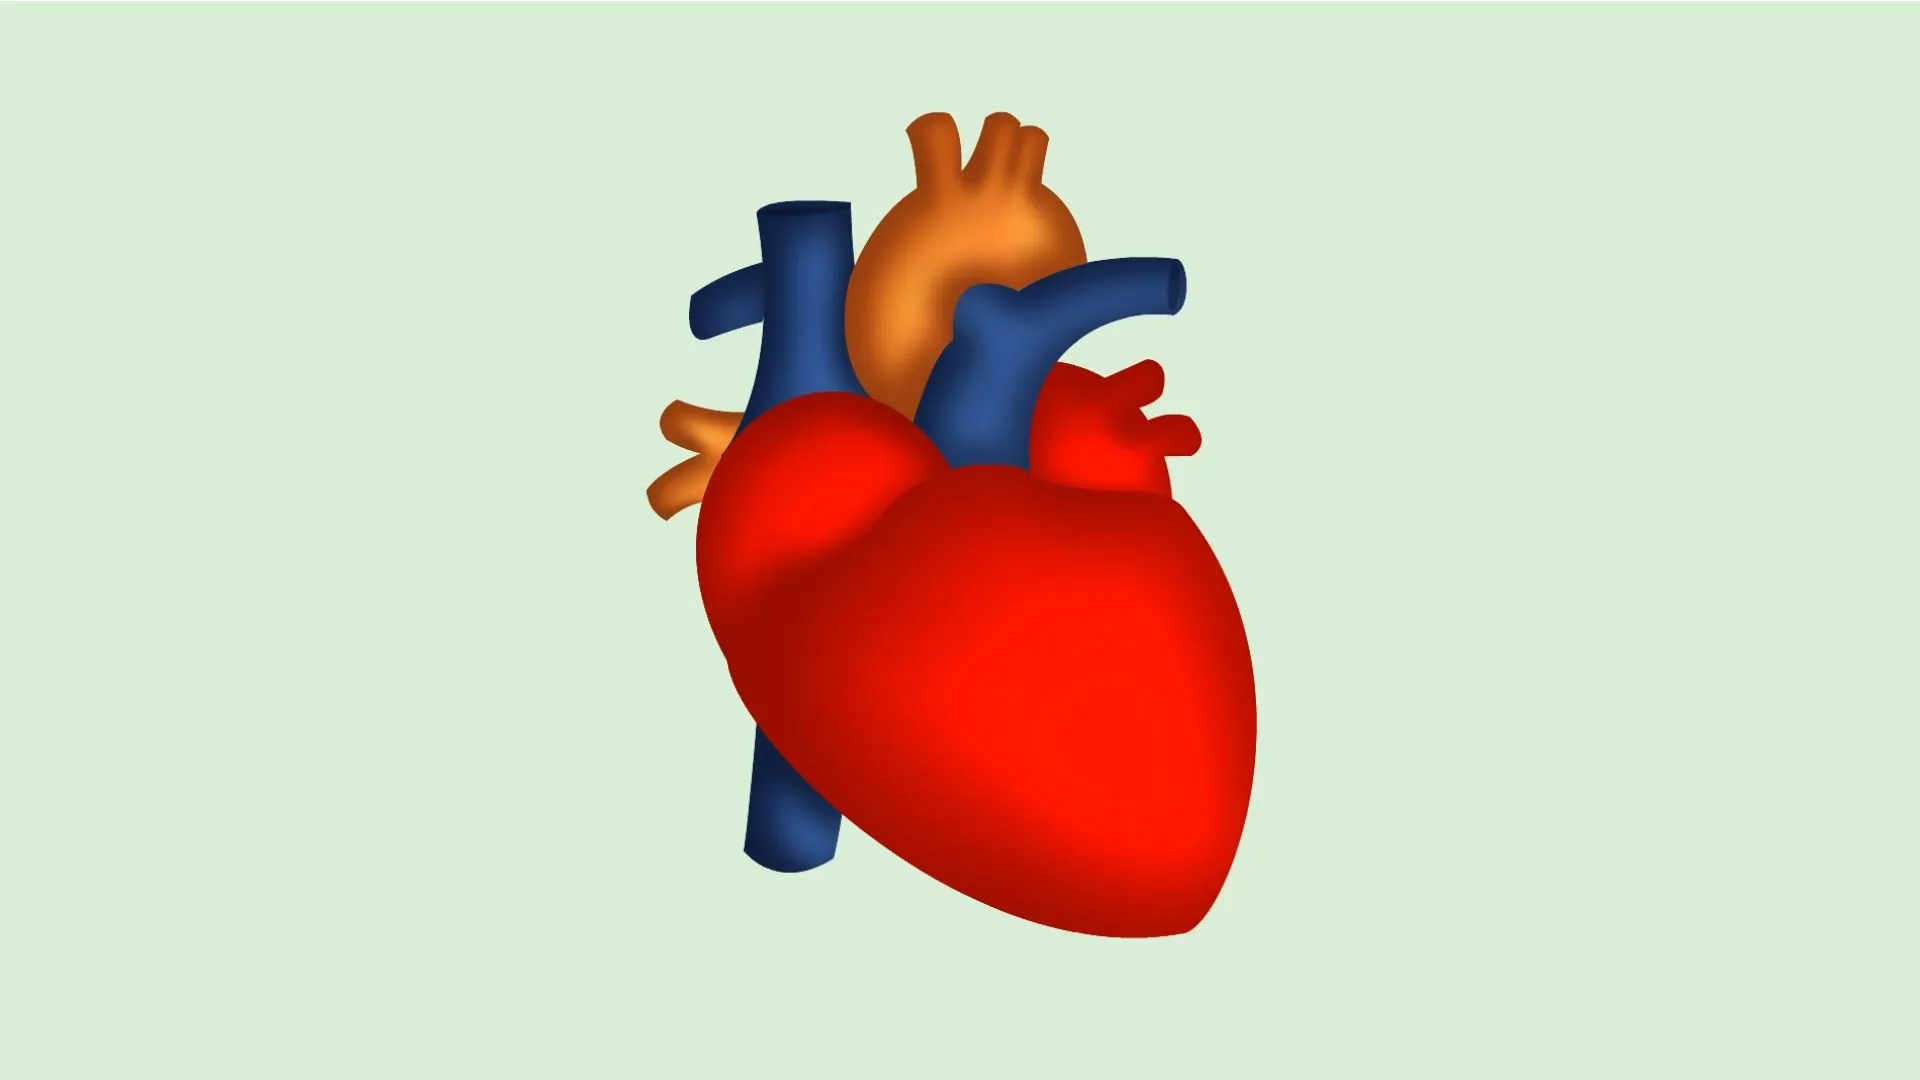 Cómo dibujar un corazón humano: 5 pasos (con fotos)